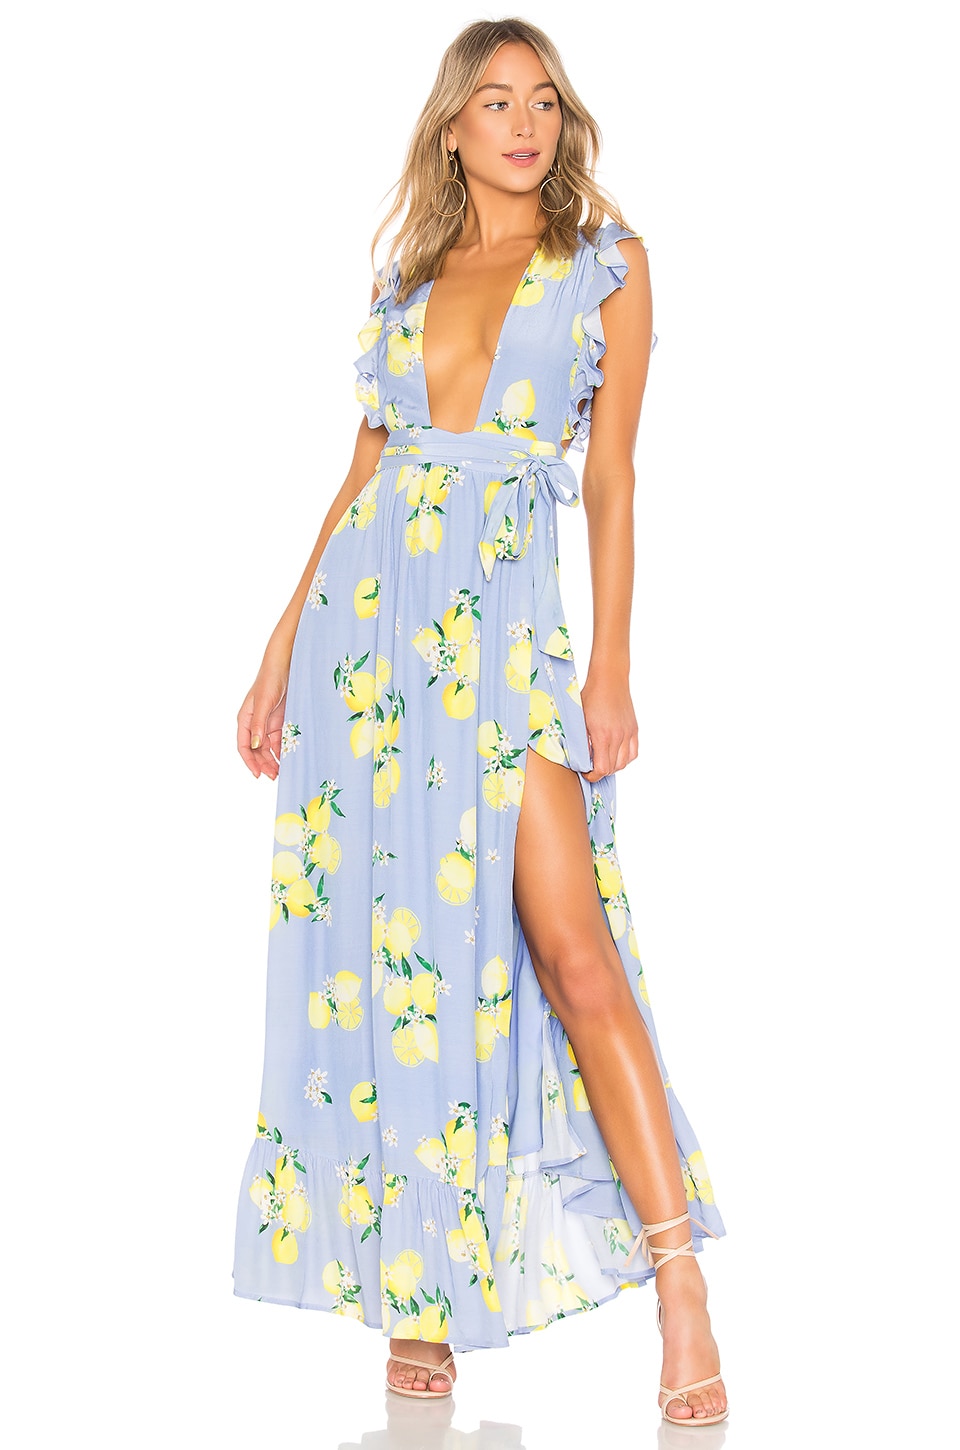 MAJORELLE Sweet Pea Dress in Blue Lemon ...